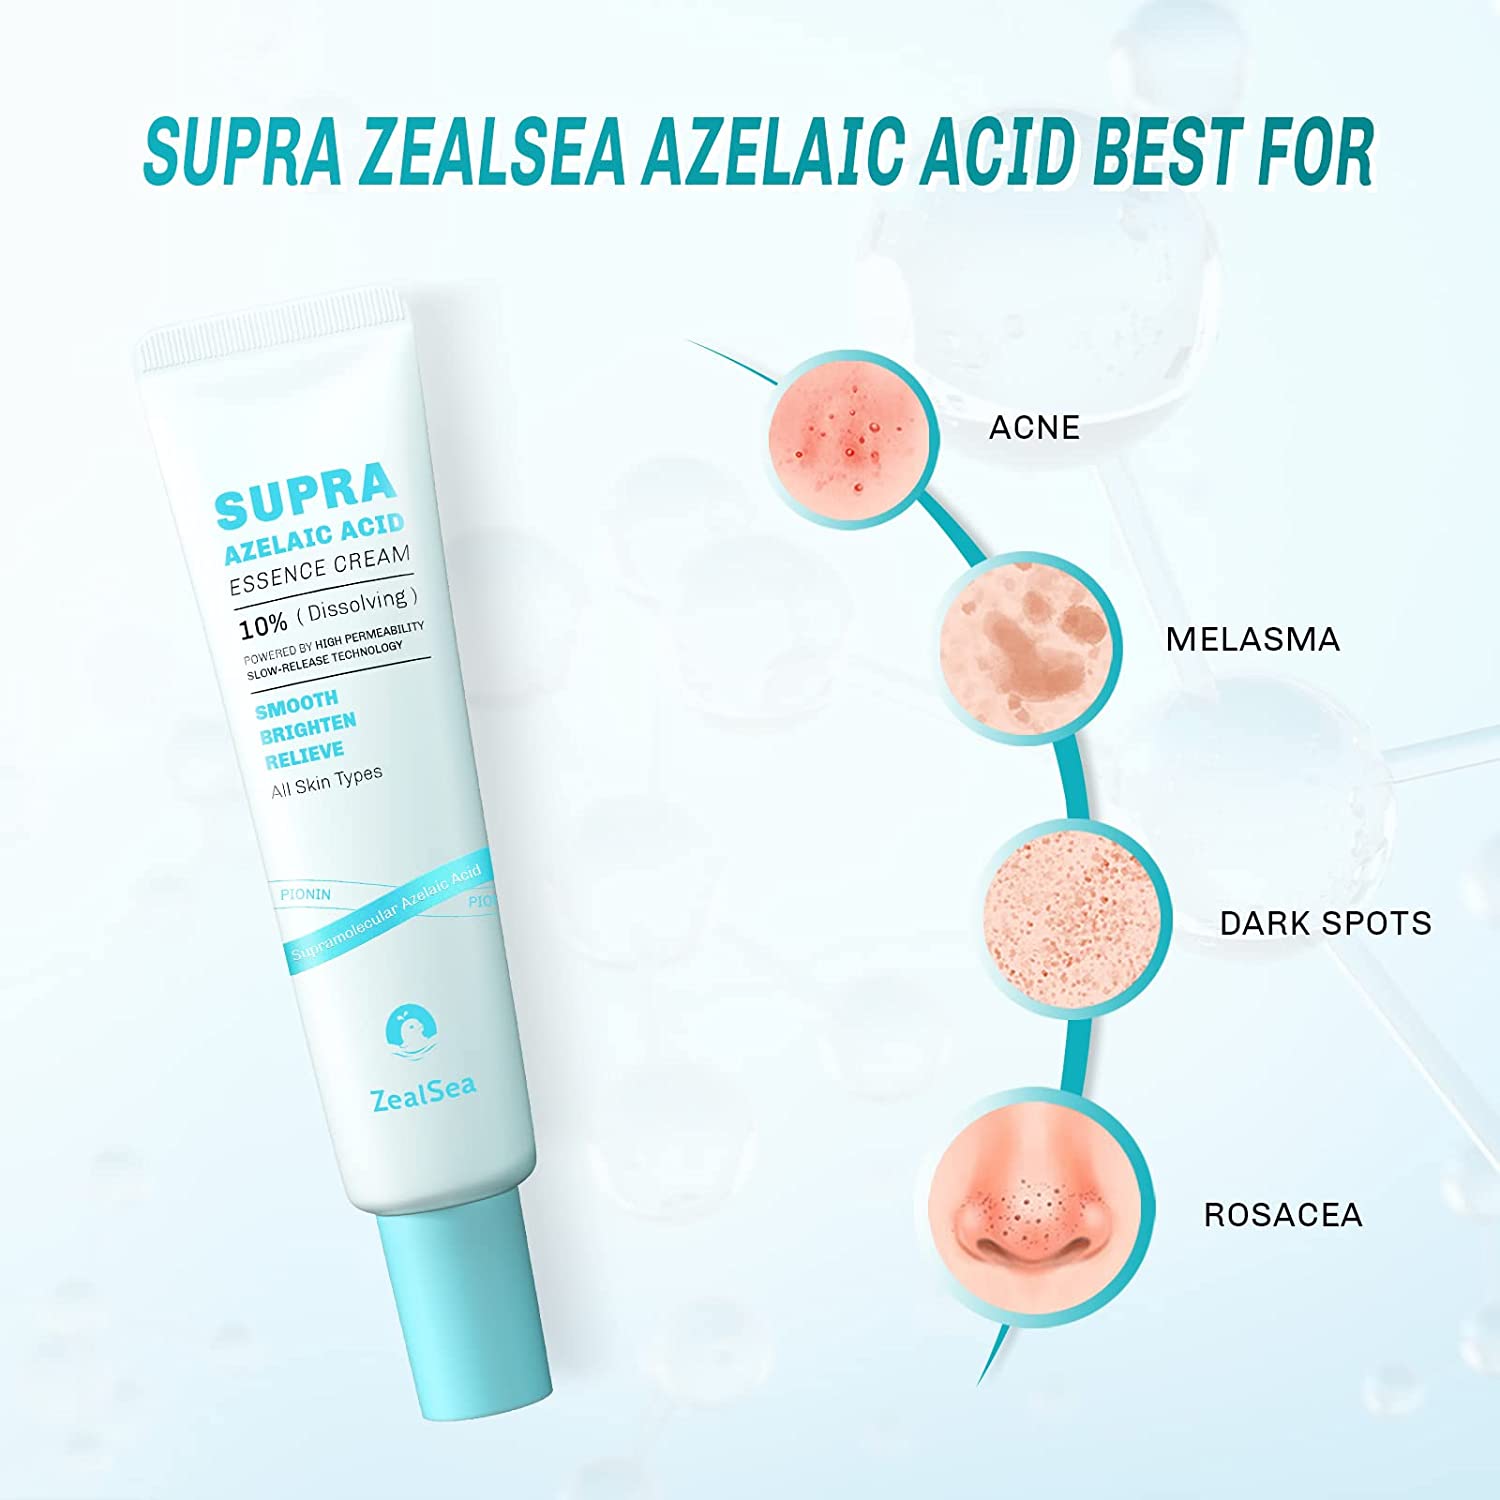 ZealSea 壬二酸 10% 面霜，用于缓解面部红肿，治疗酒渣鼻痤疮，粉刺,平衡油脂